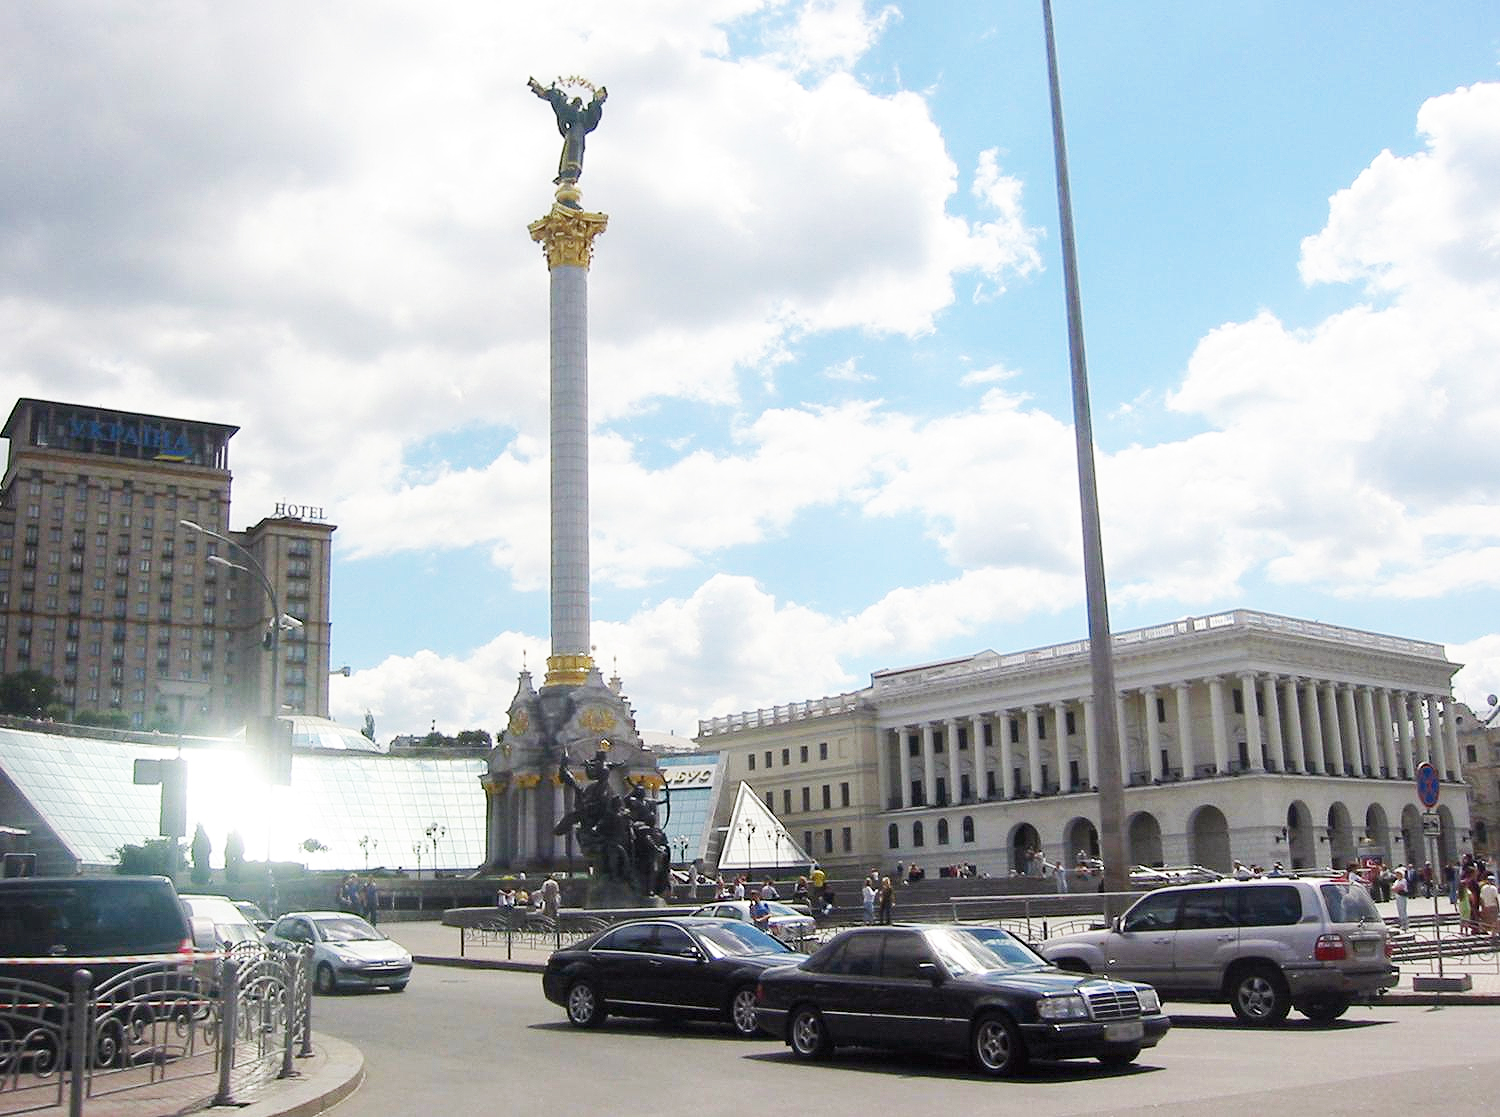 Maidan Square in Kiev, Ukraine